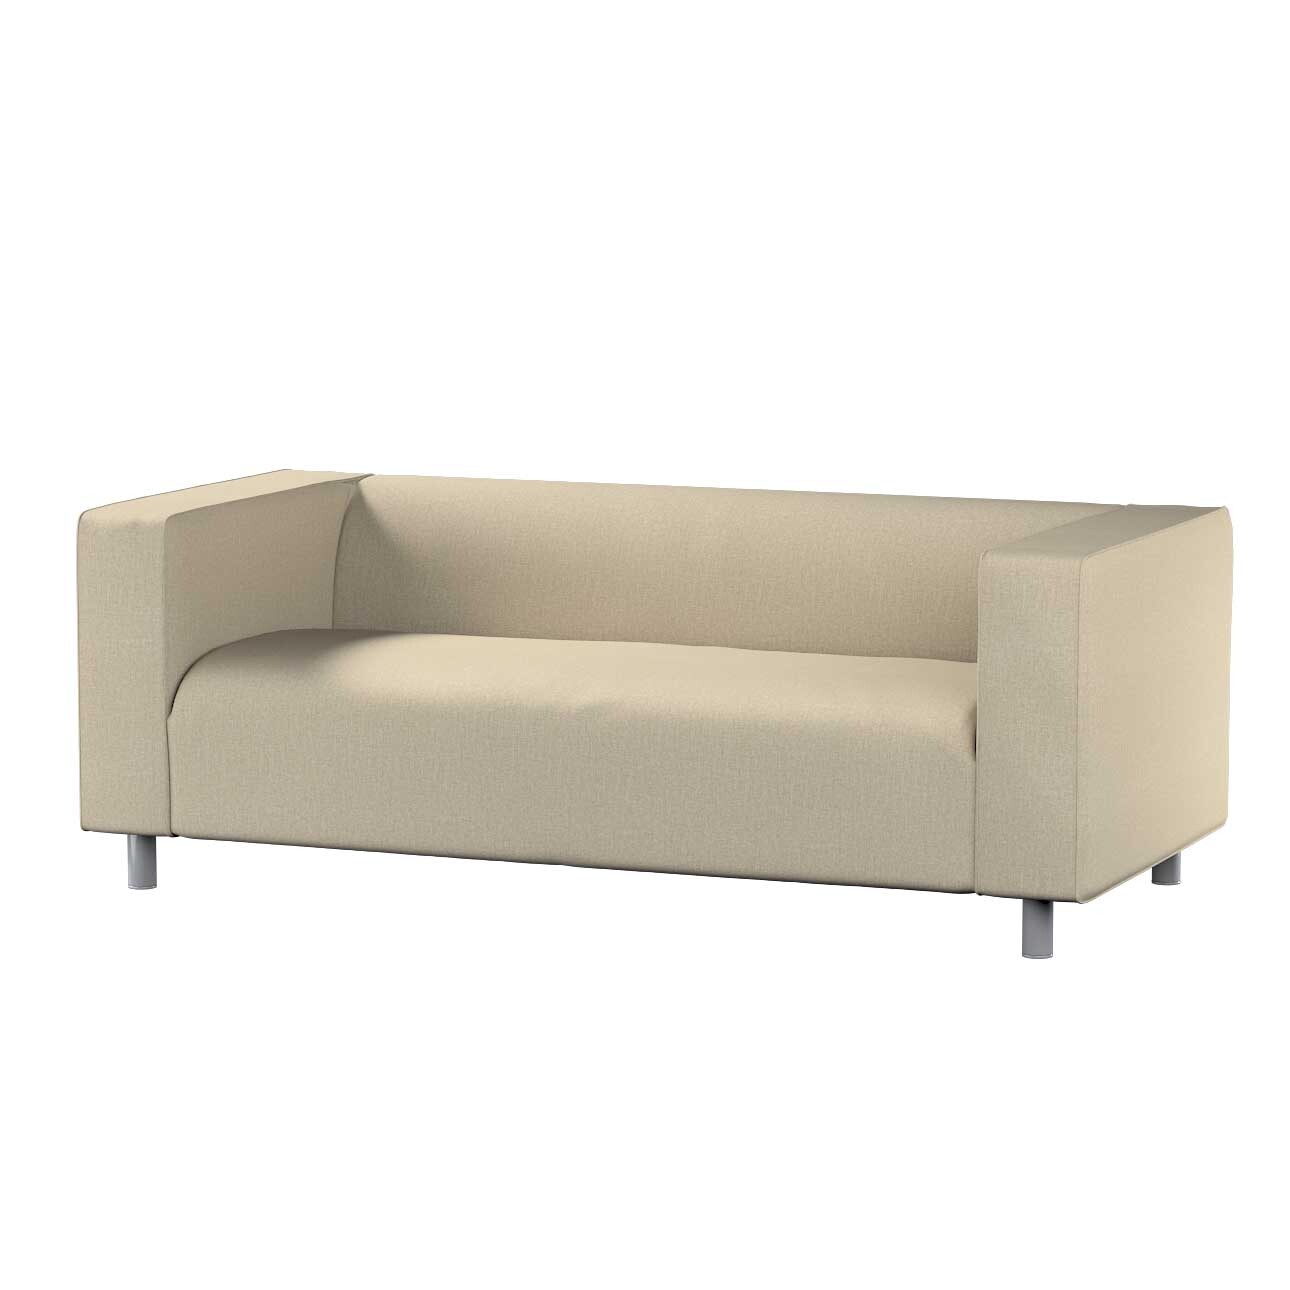 Bezug für Klippan 2-Sitzer Sofa, beige- grau, Sofahusse, Klippan 2-Sitzer, günstig online kaufen